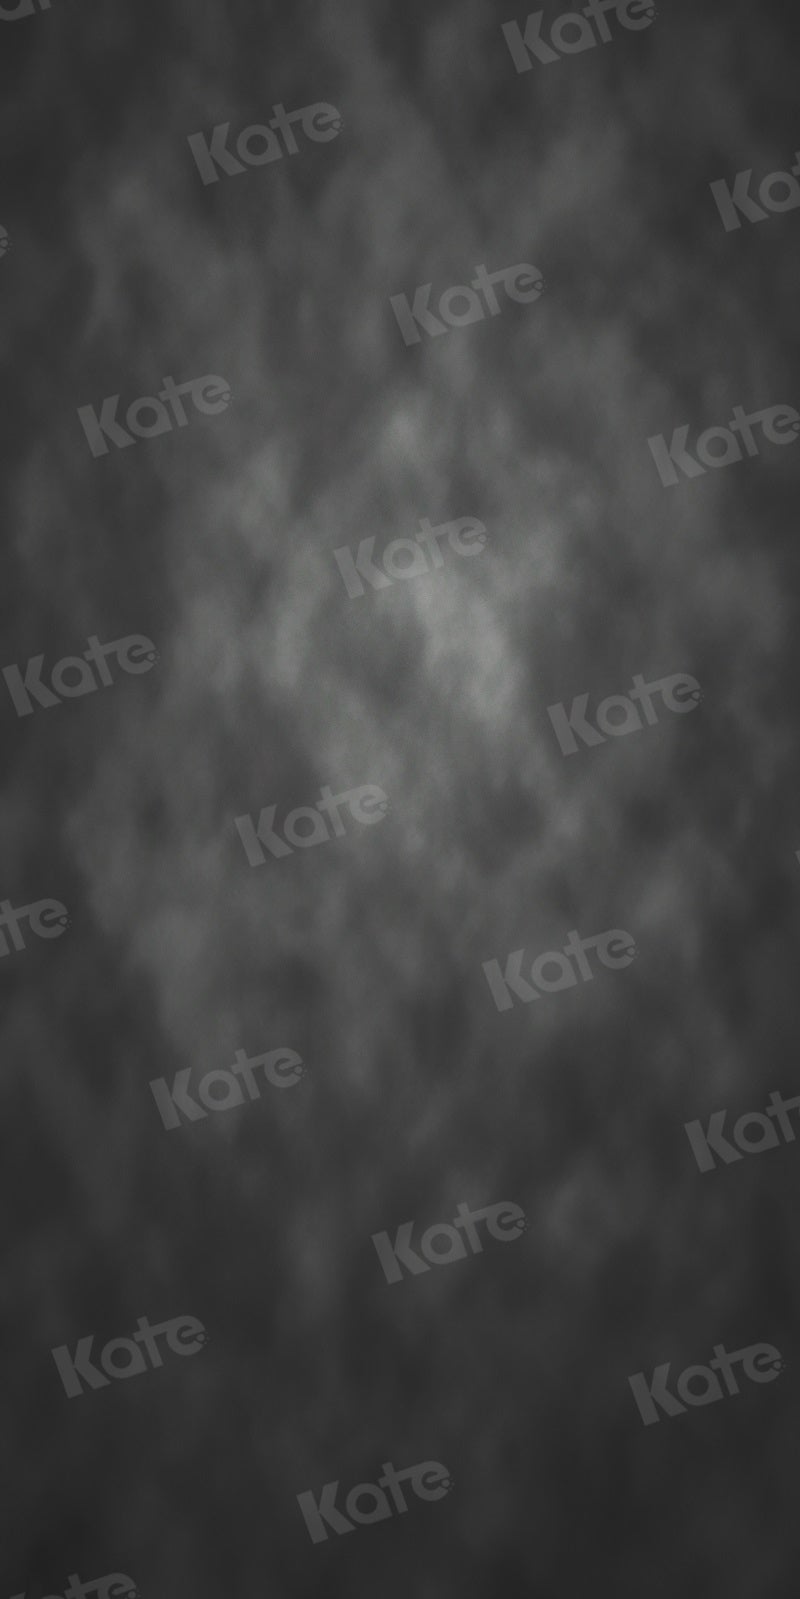 Kate Balayage Texture Abstraite Noir Toile de fond pour la photographie